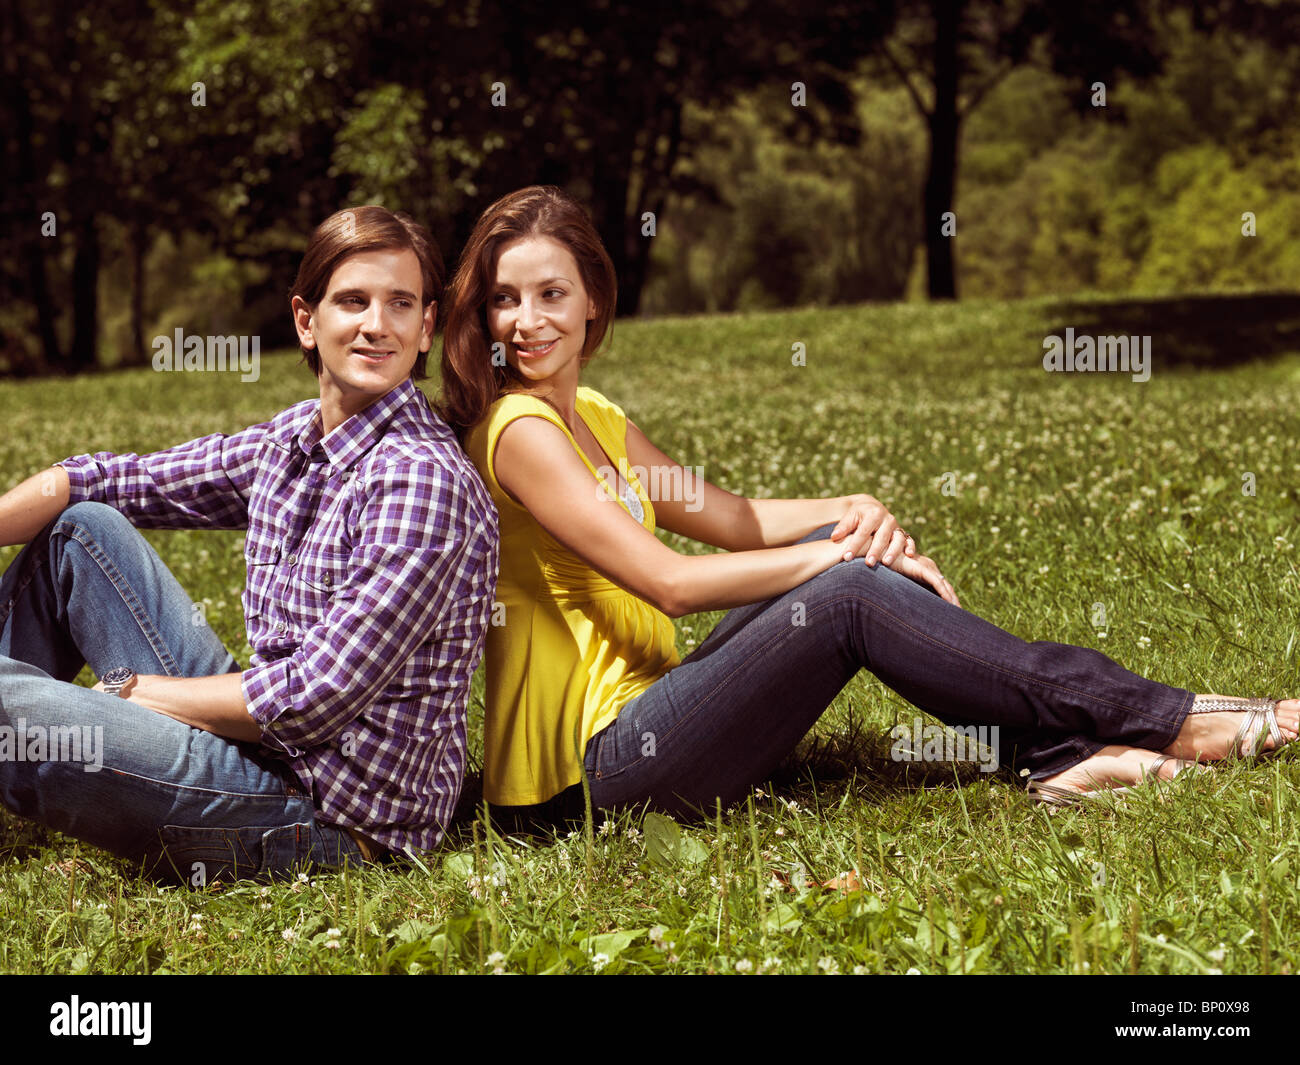 Lizenz erhältlich unter MaximImages.com - Junge glückliche, lächelnde Paare in ihren frühen 30ern, die auf Gras in einem Park sitzen Stockfoto